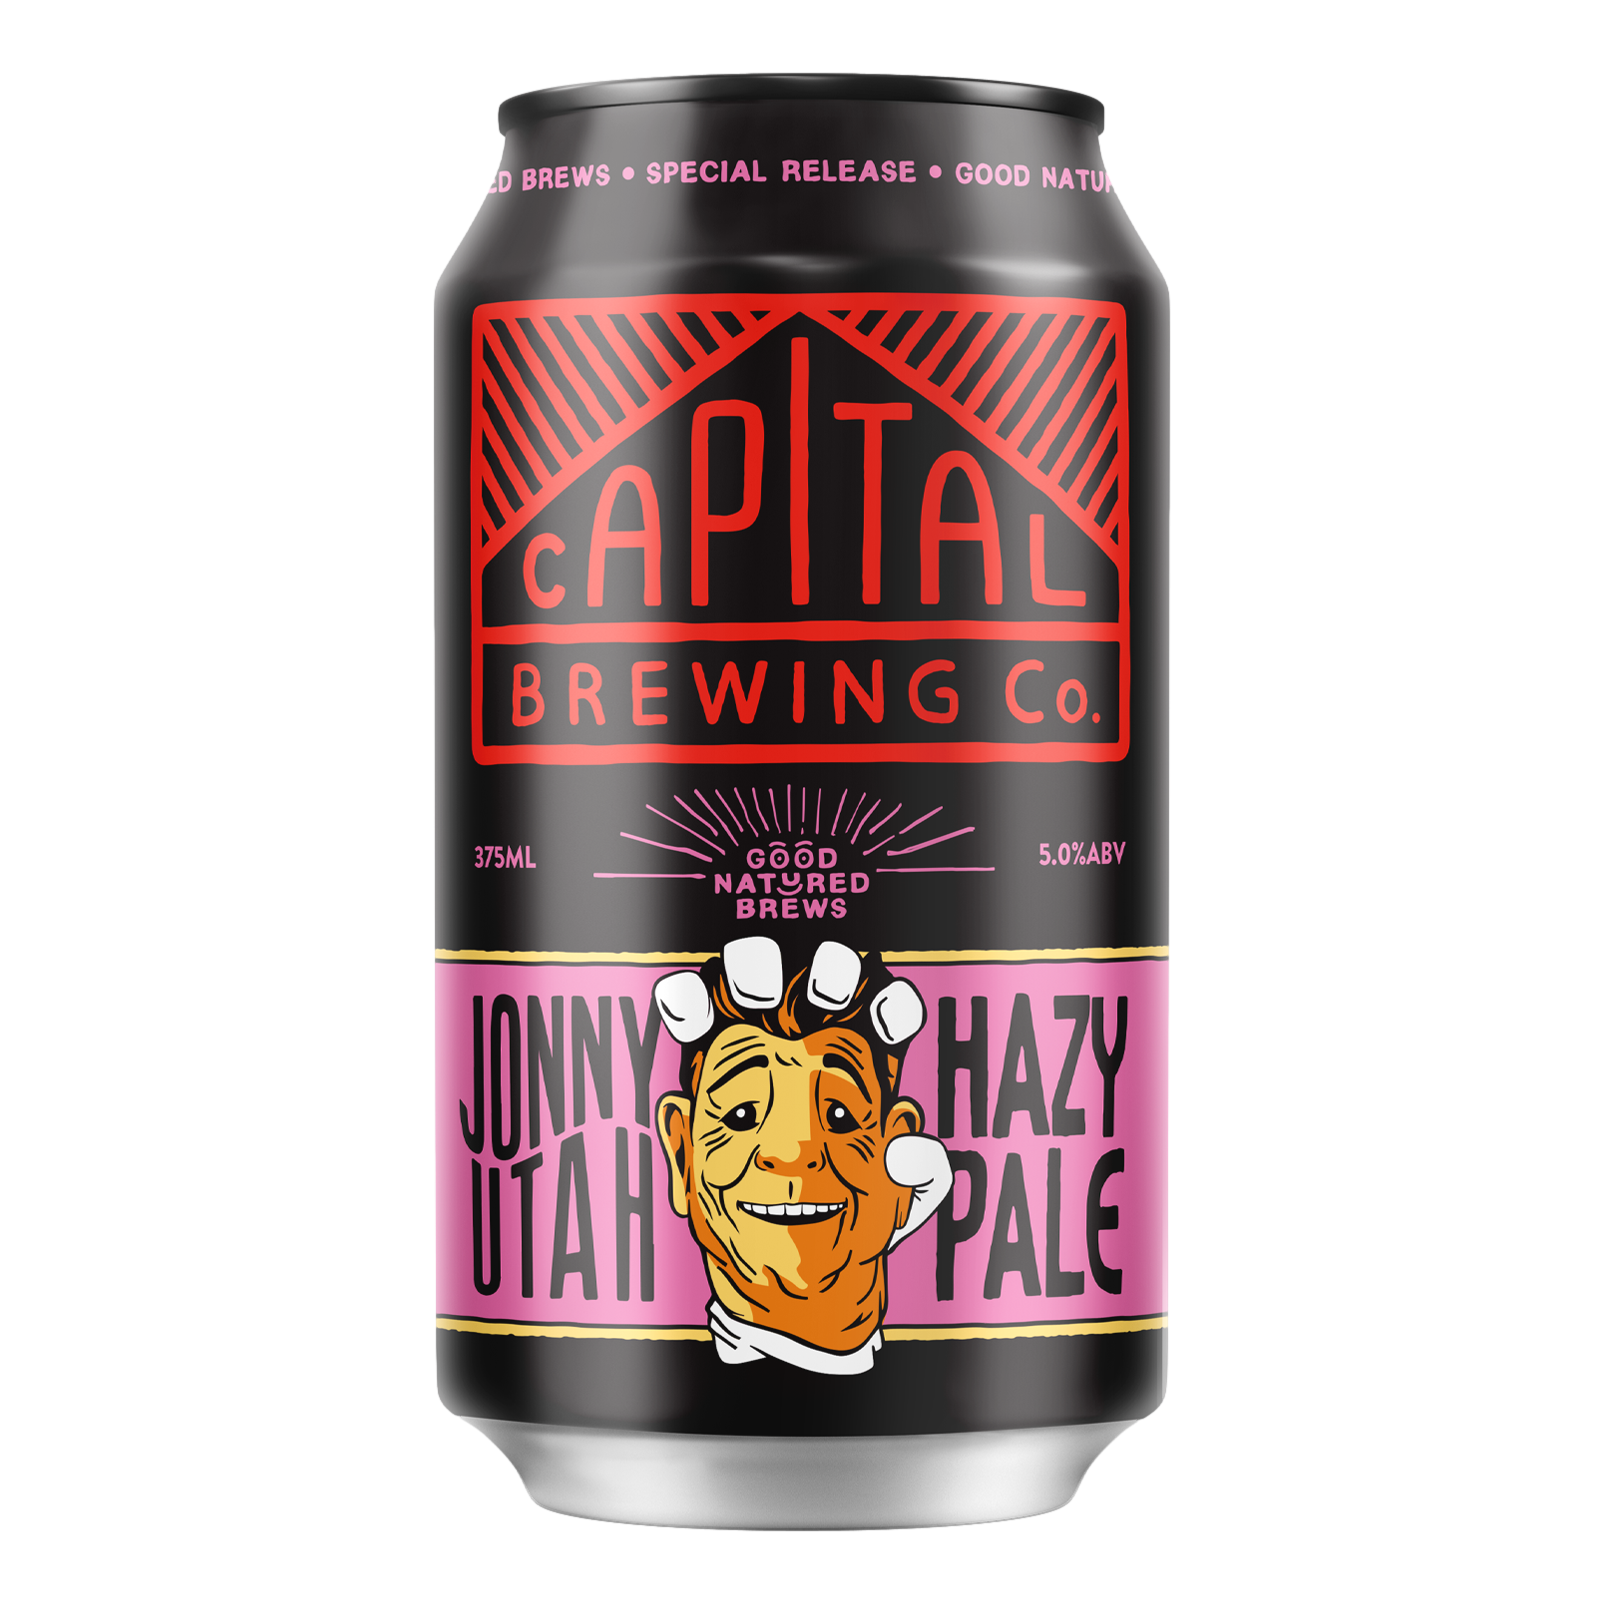 Capital Brewing Jonny Utah Hazy Pale Ale 375ml Can Single